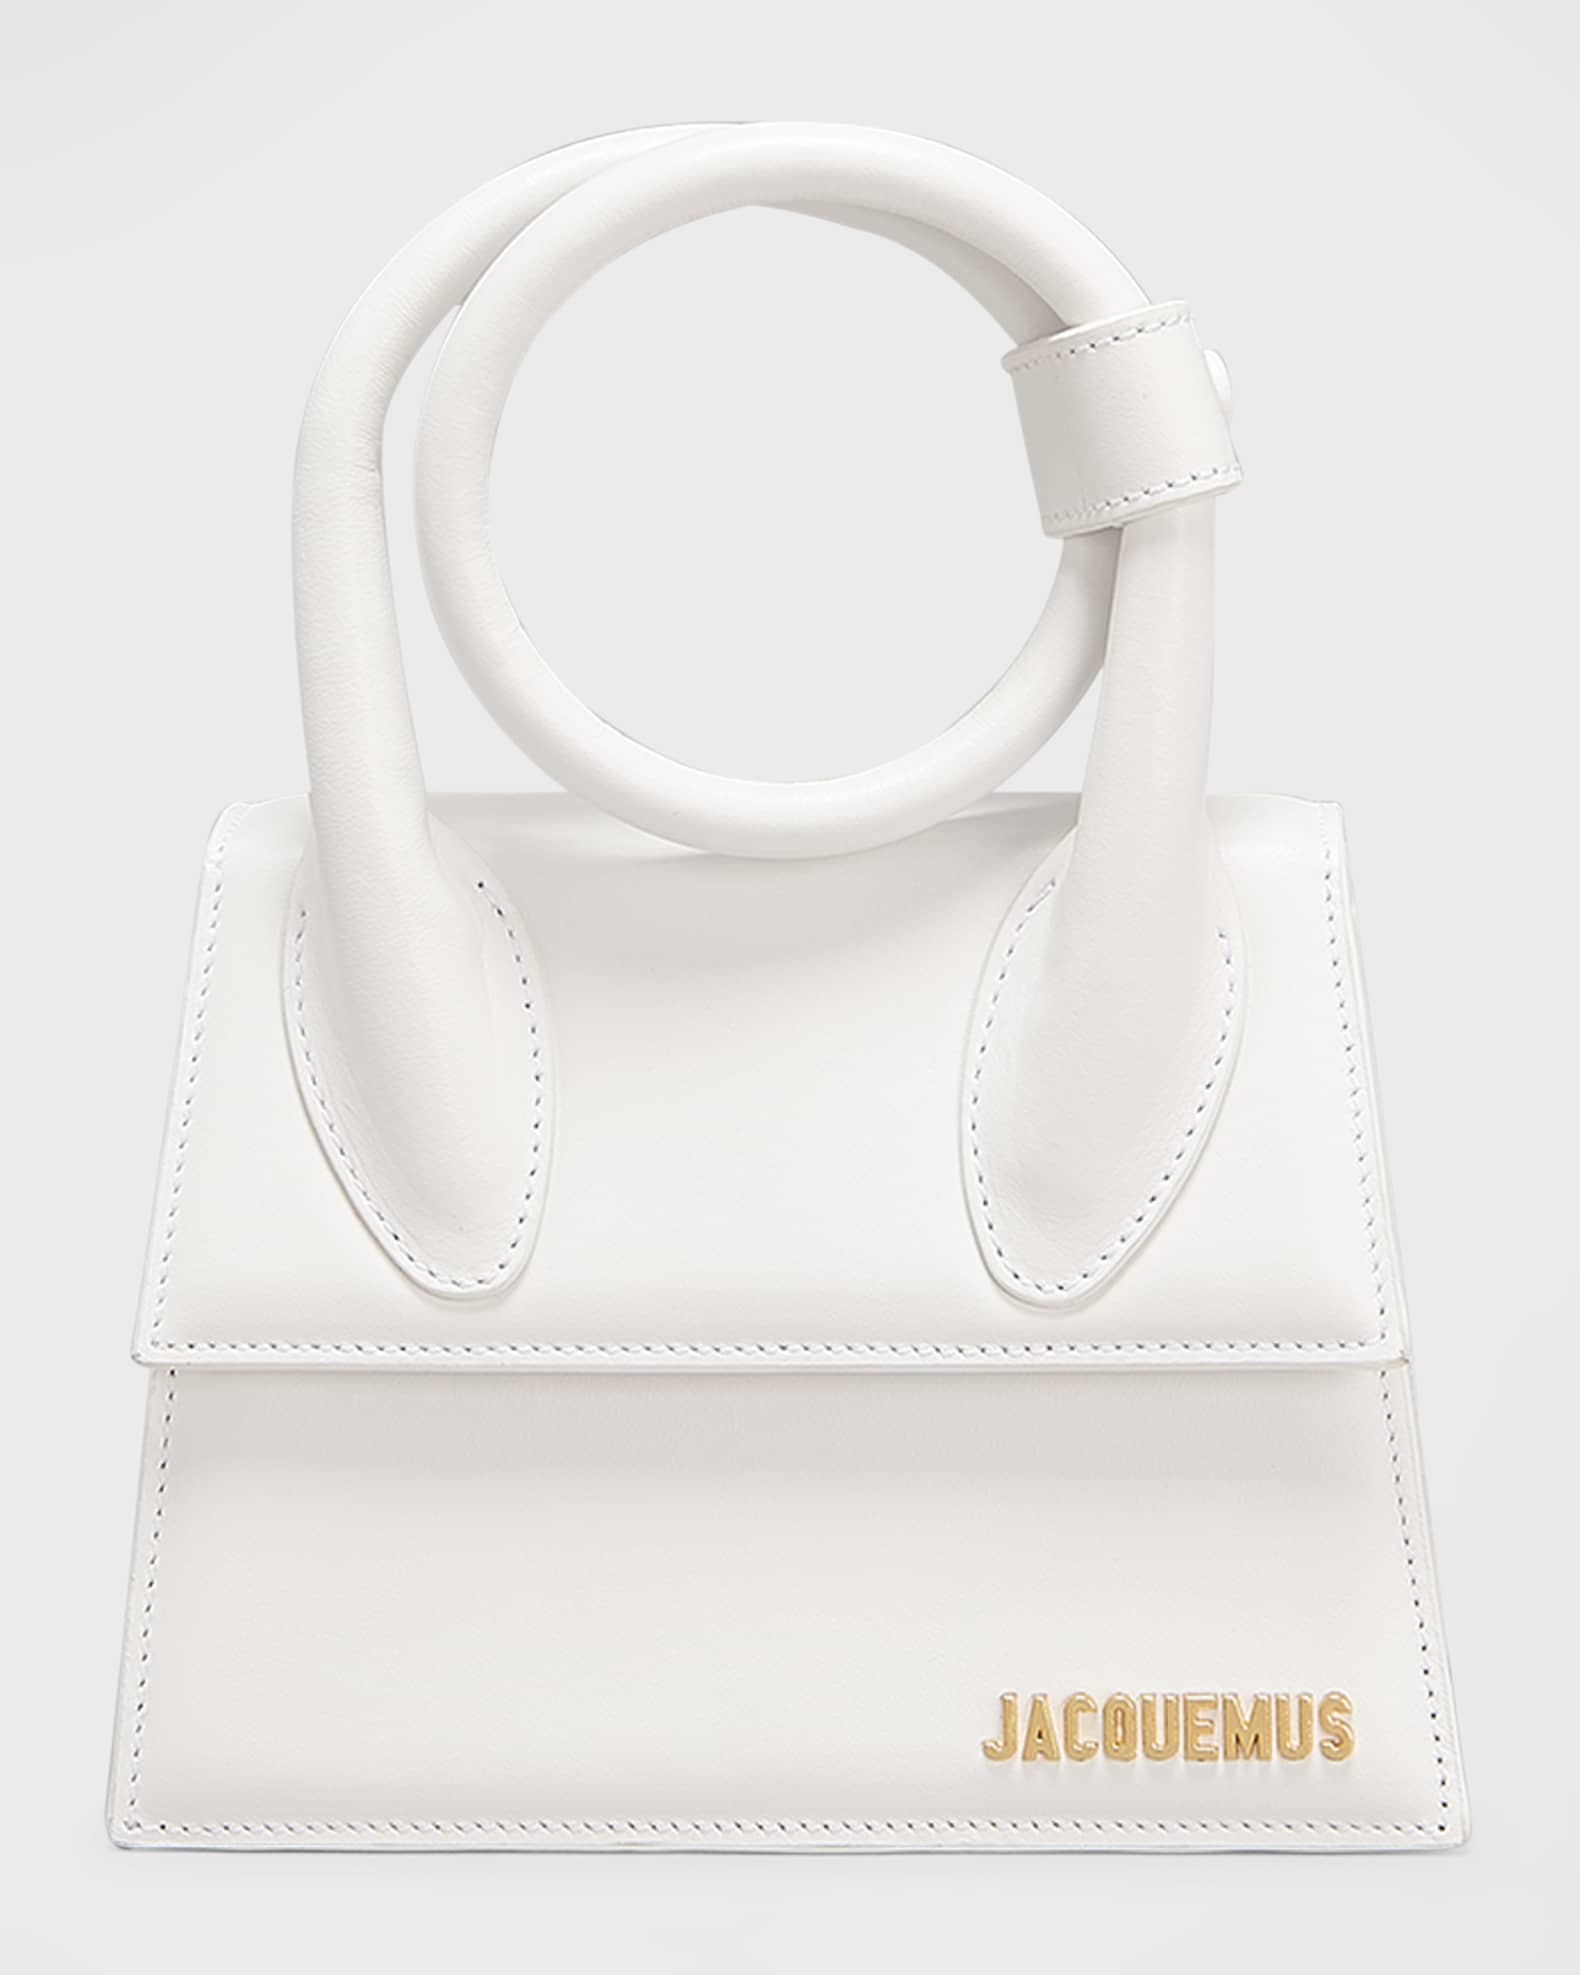 Jacquemus Women's Le Chiquito Noeud Bag